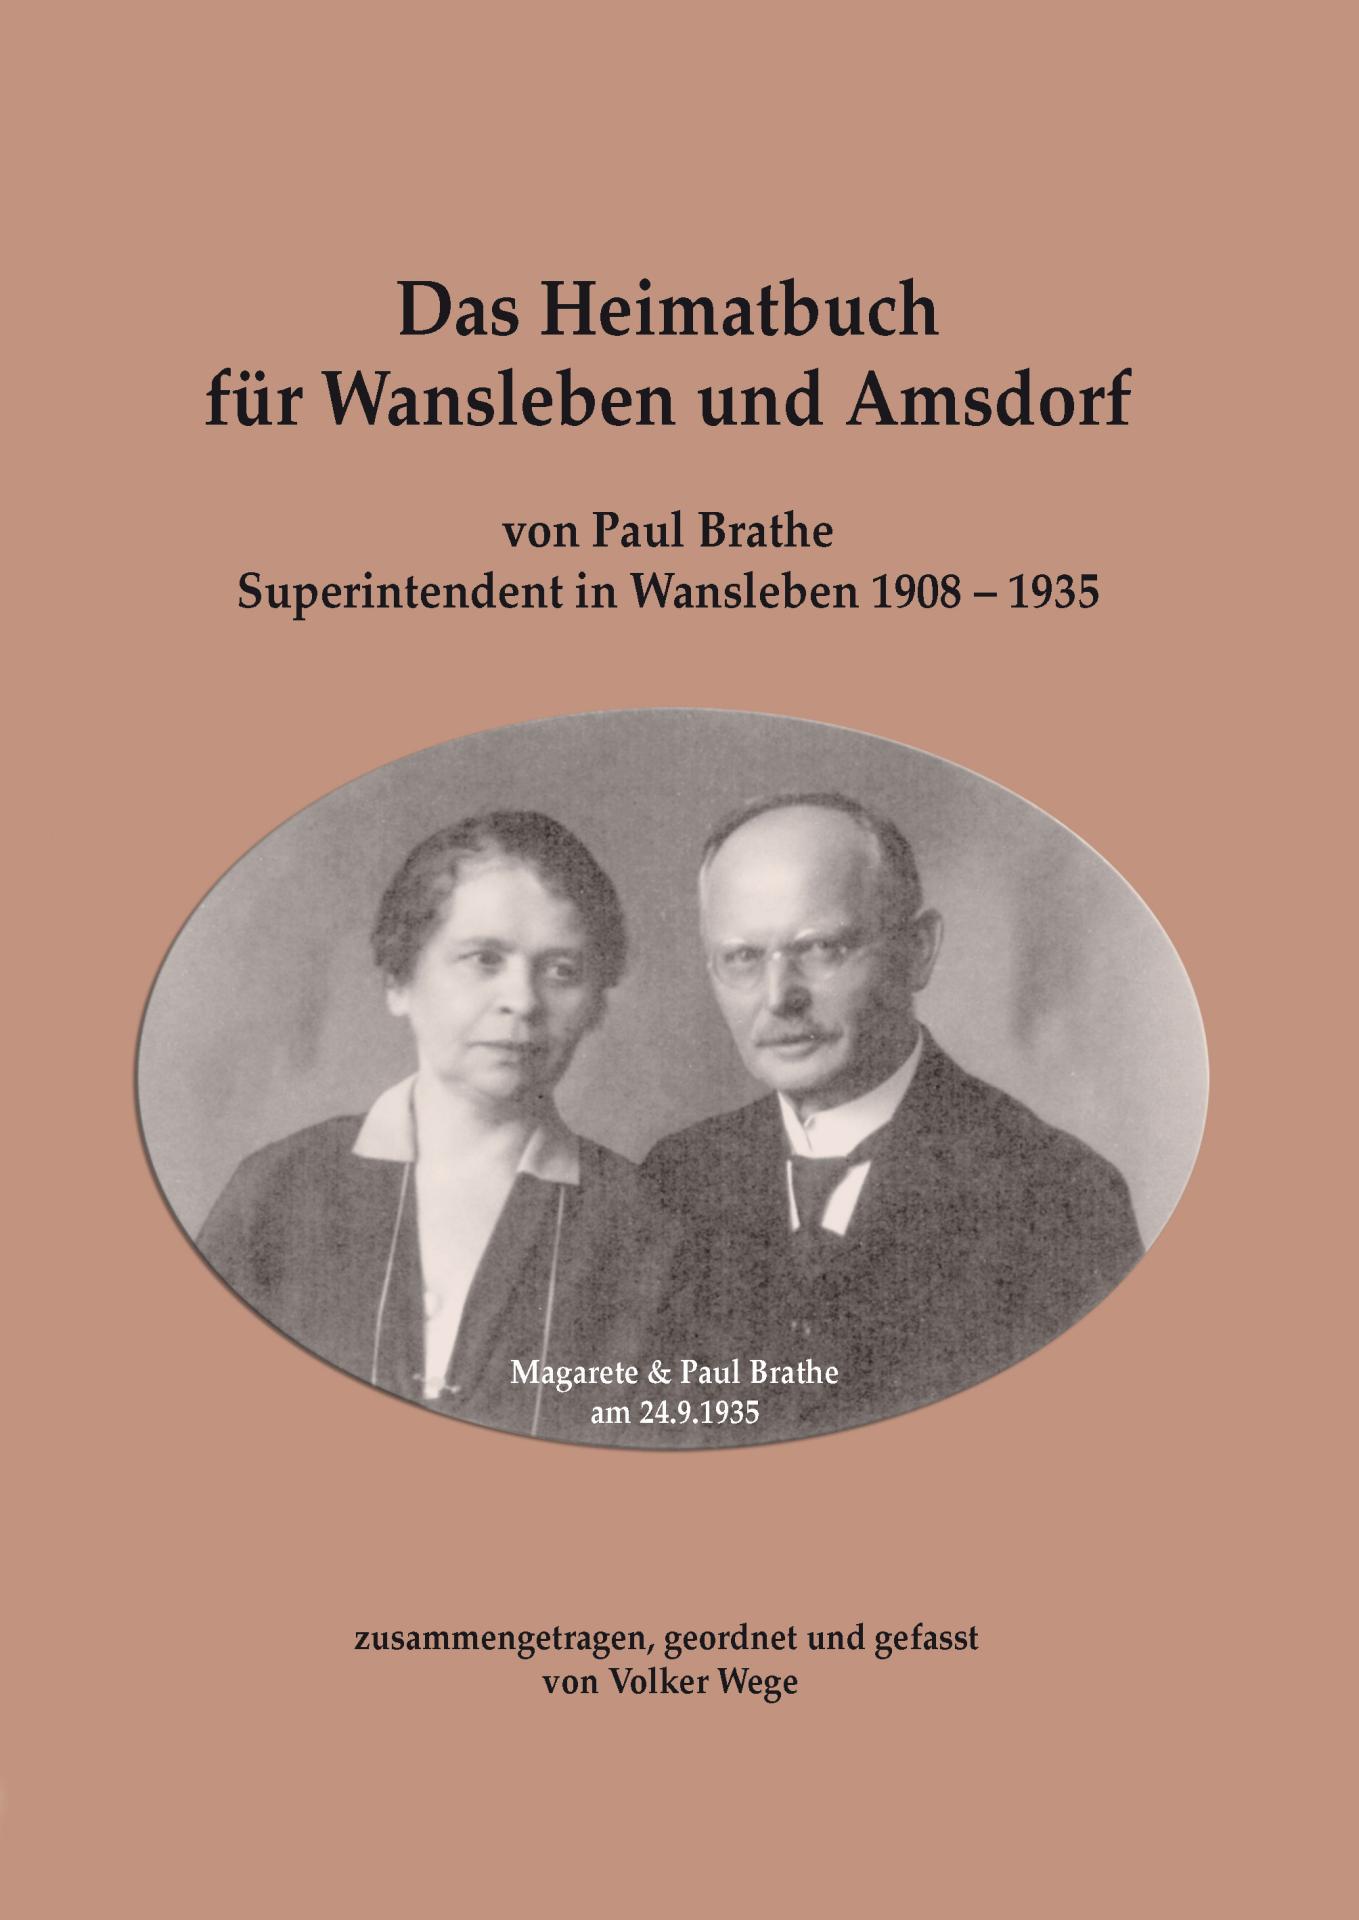 Das Heimatbuch für Wansleben und Amsdorf